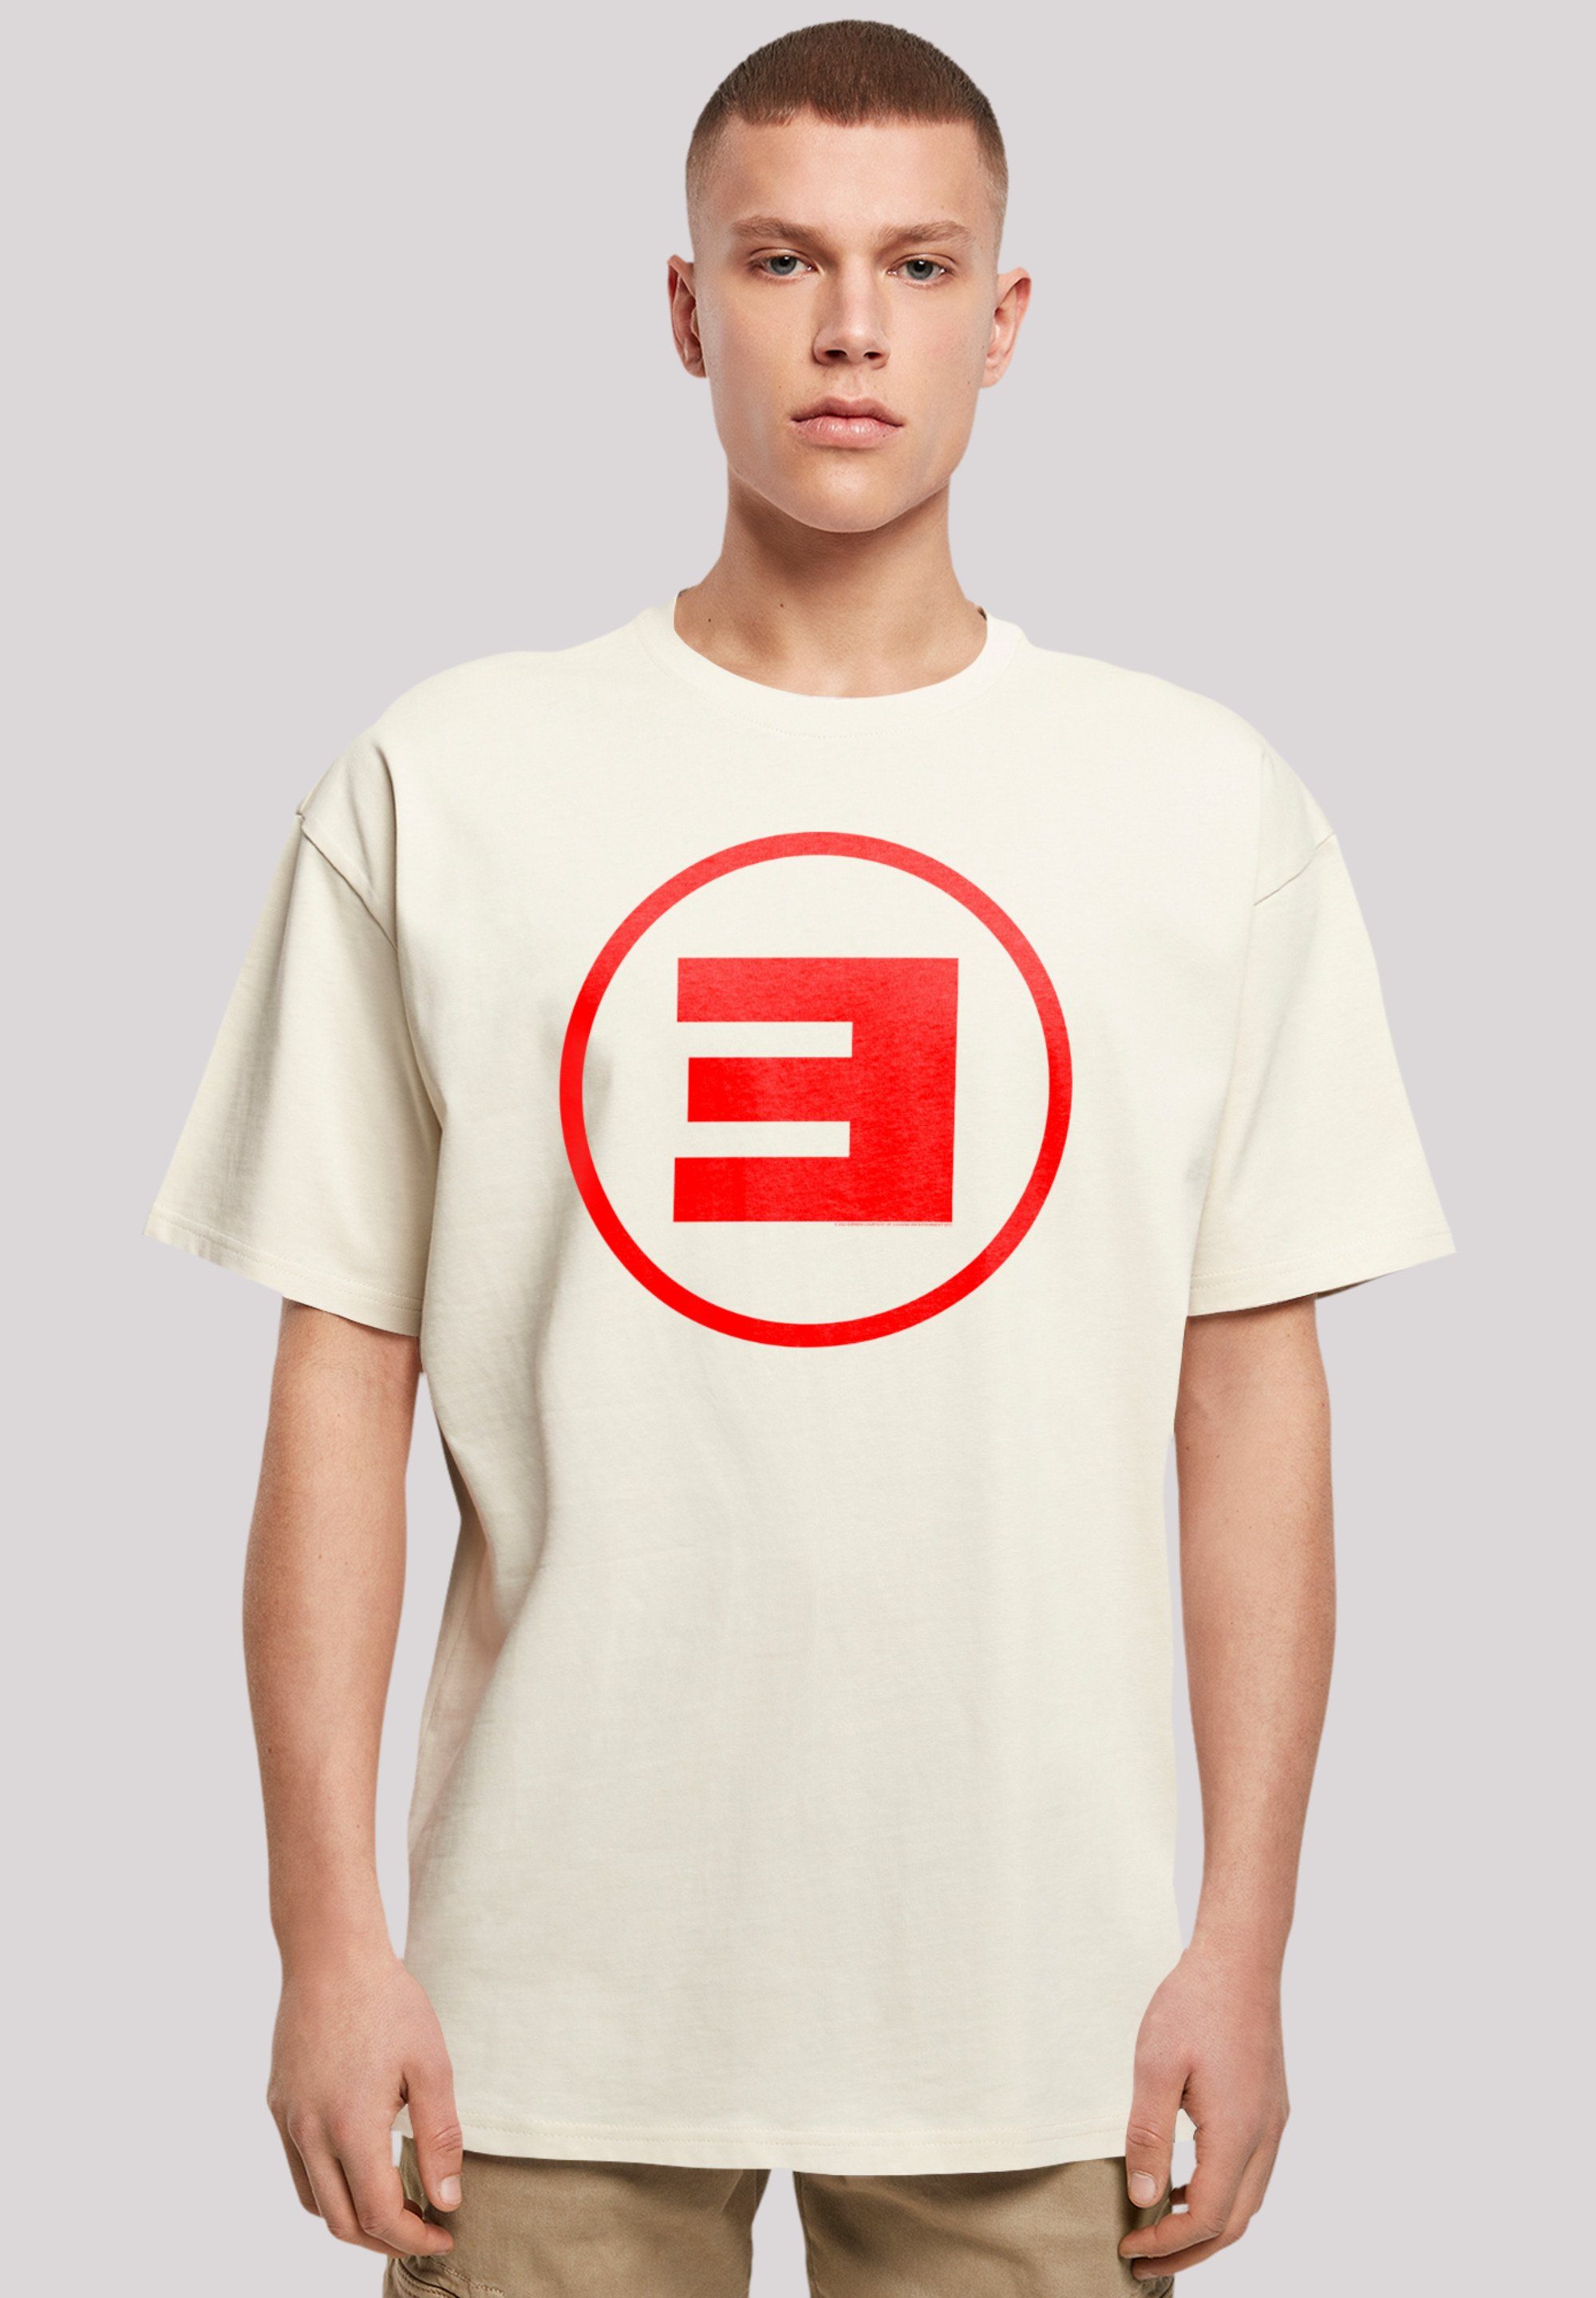 F4NT4STIC T-Shirt Eminem Circle E Rap Hip Hop Music Premium Qualität, Musik,  By Rock Off, Weite Passform und überschnittene Schultern